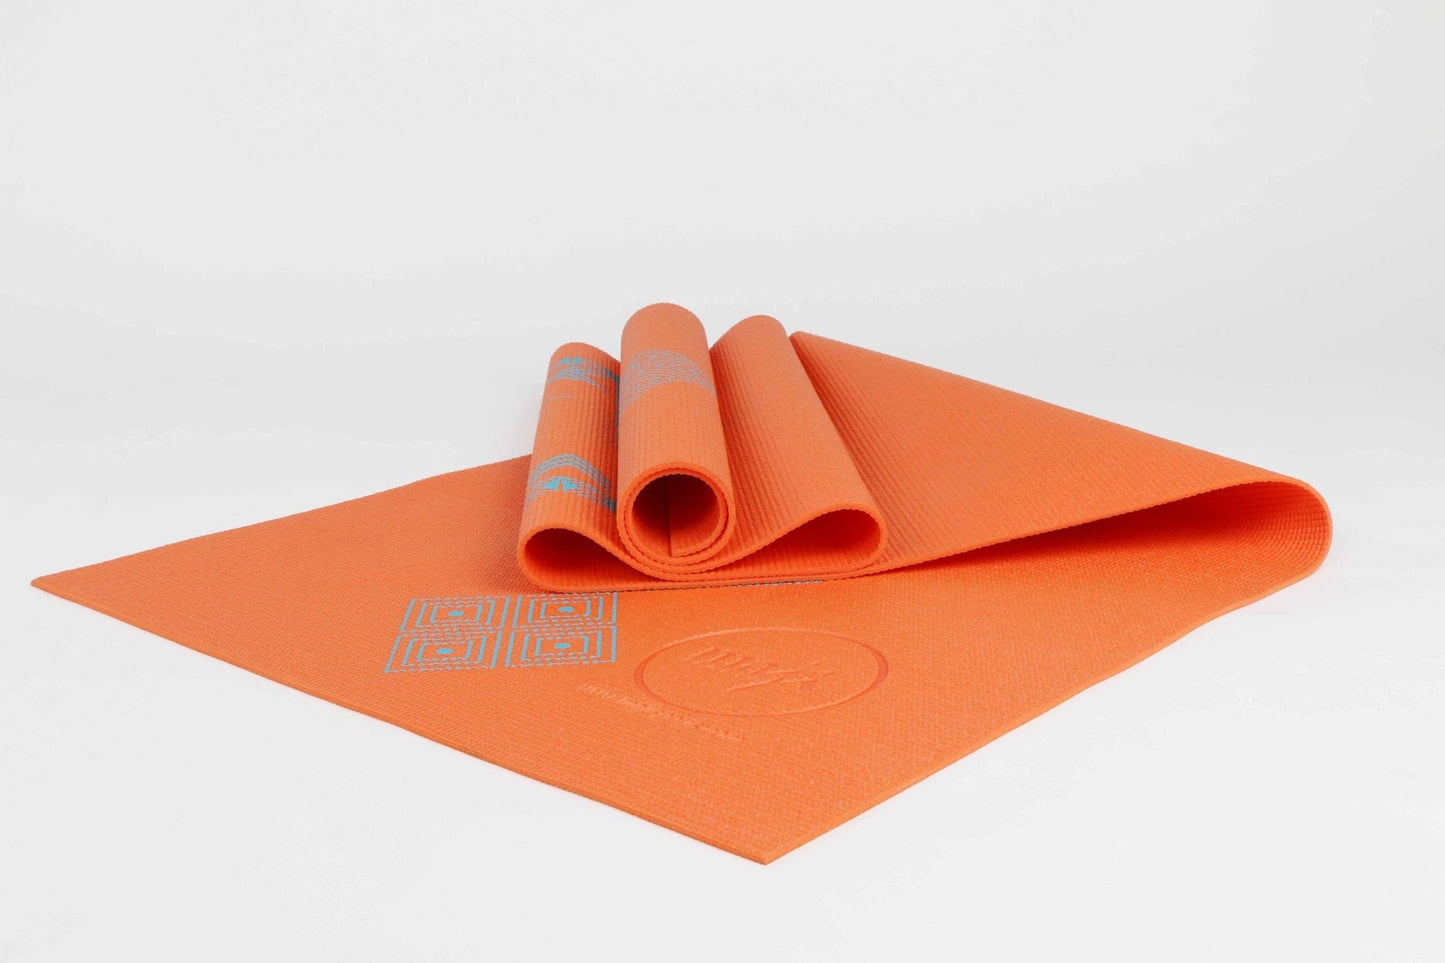 Printed PVC Premium Yoga Mat - Saltwater Bodega